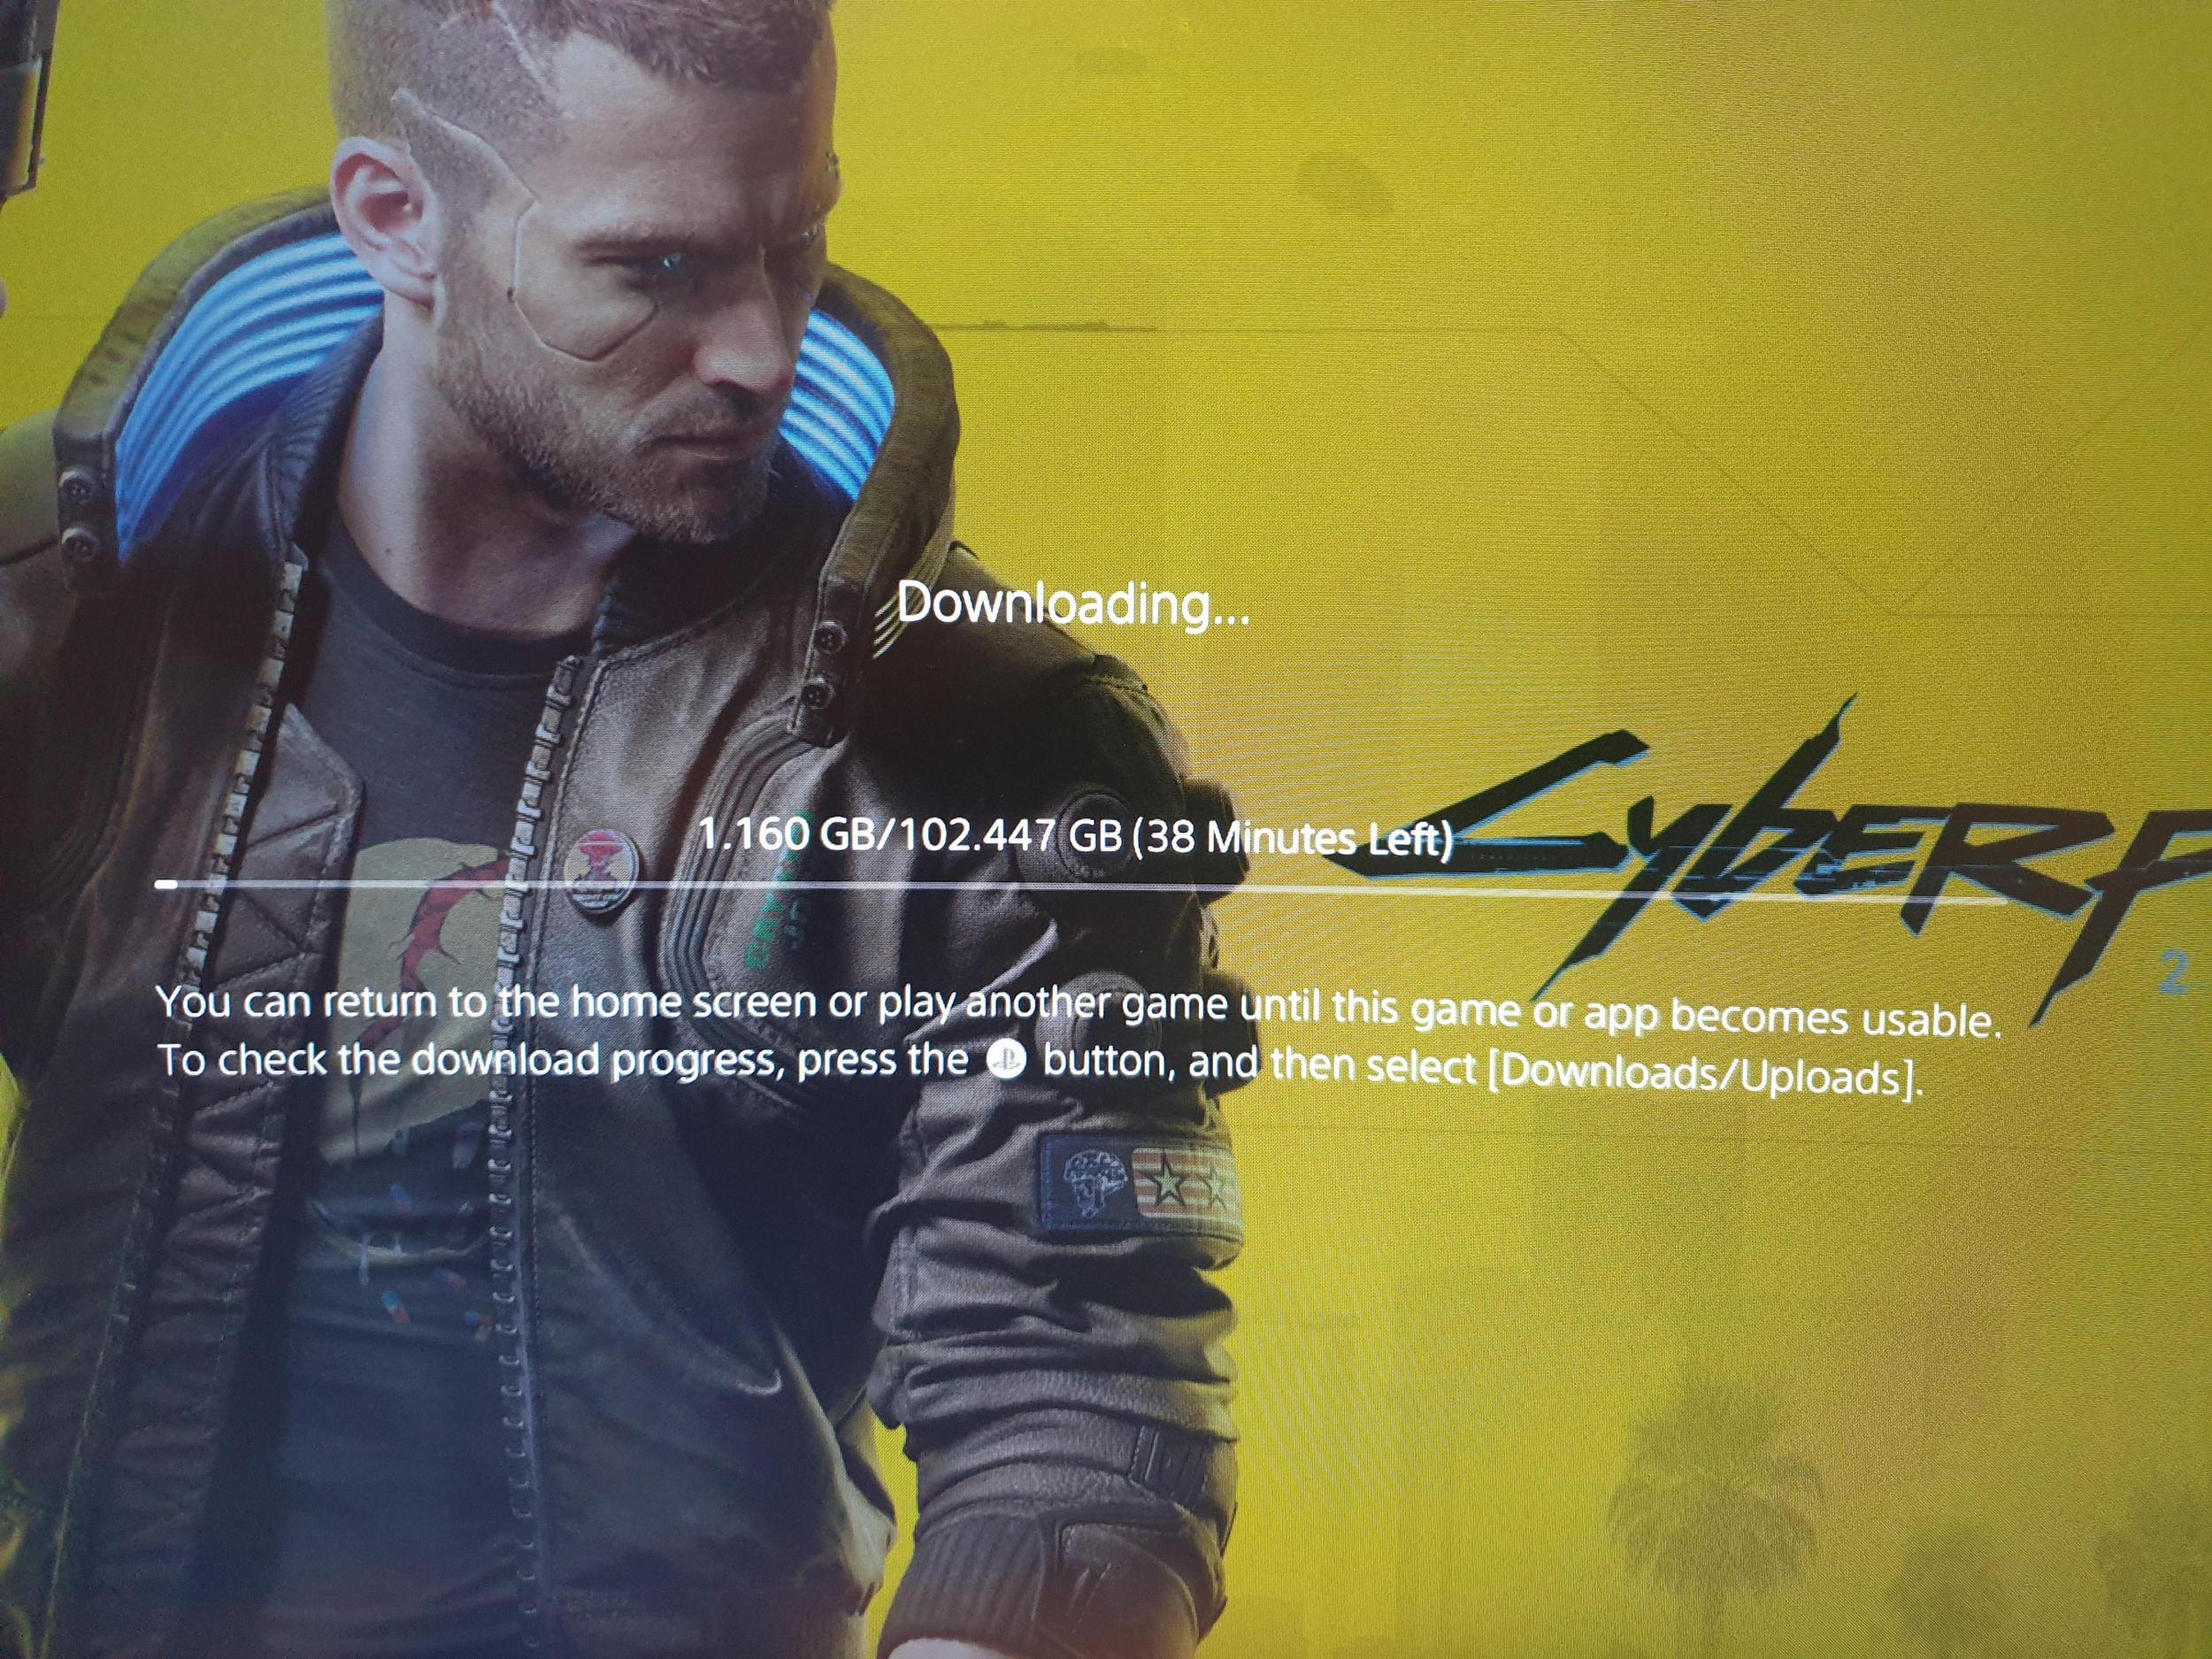 Obrázek stahování Cyberpunk 2077 v PS4 verzi na konzoli PS5.